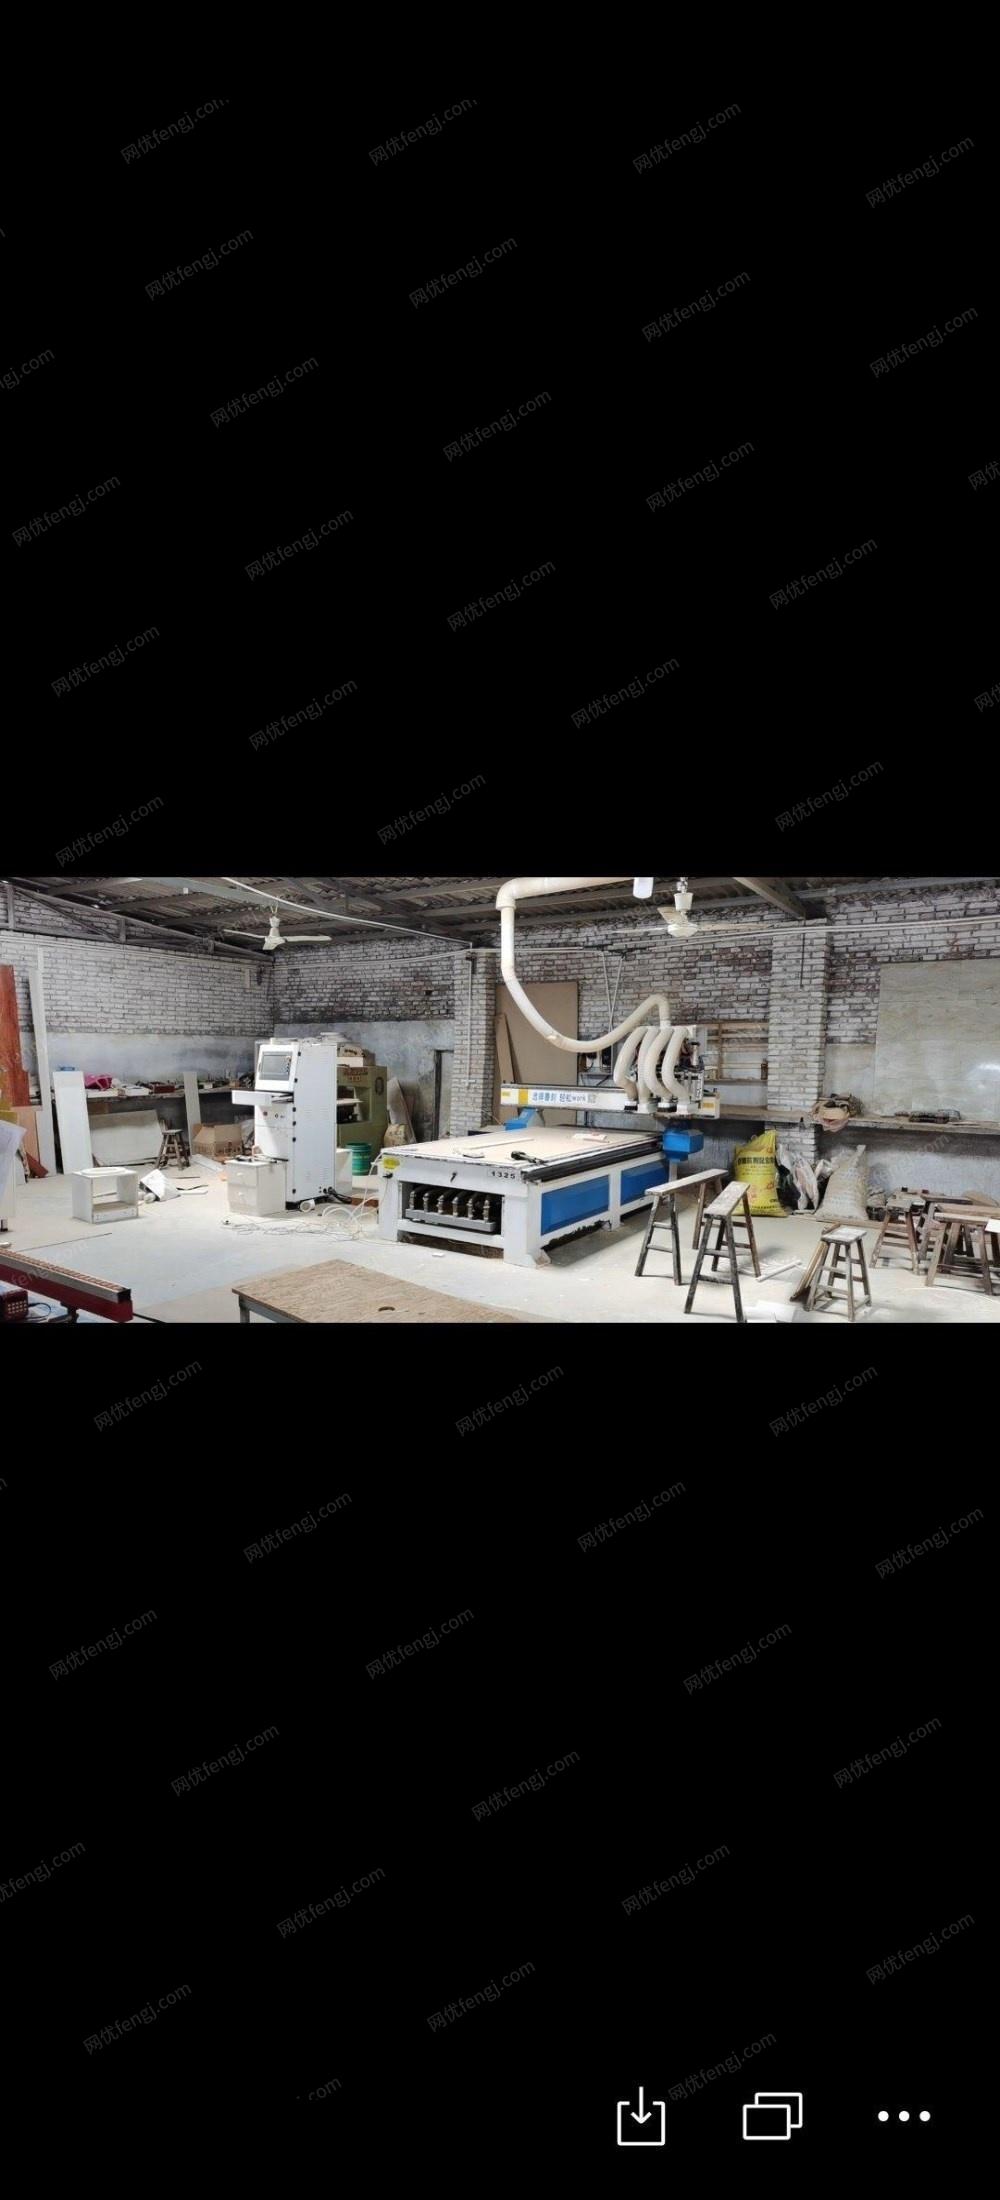 河北石家庄 营业中2017年四公序开料机一台出售 30000元